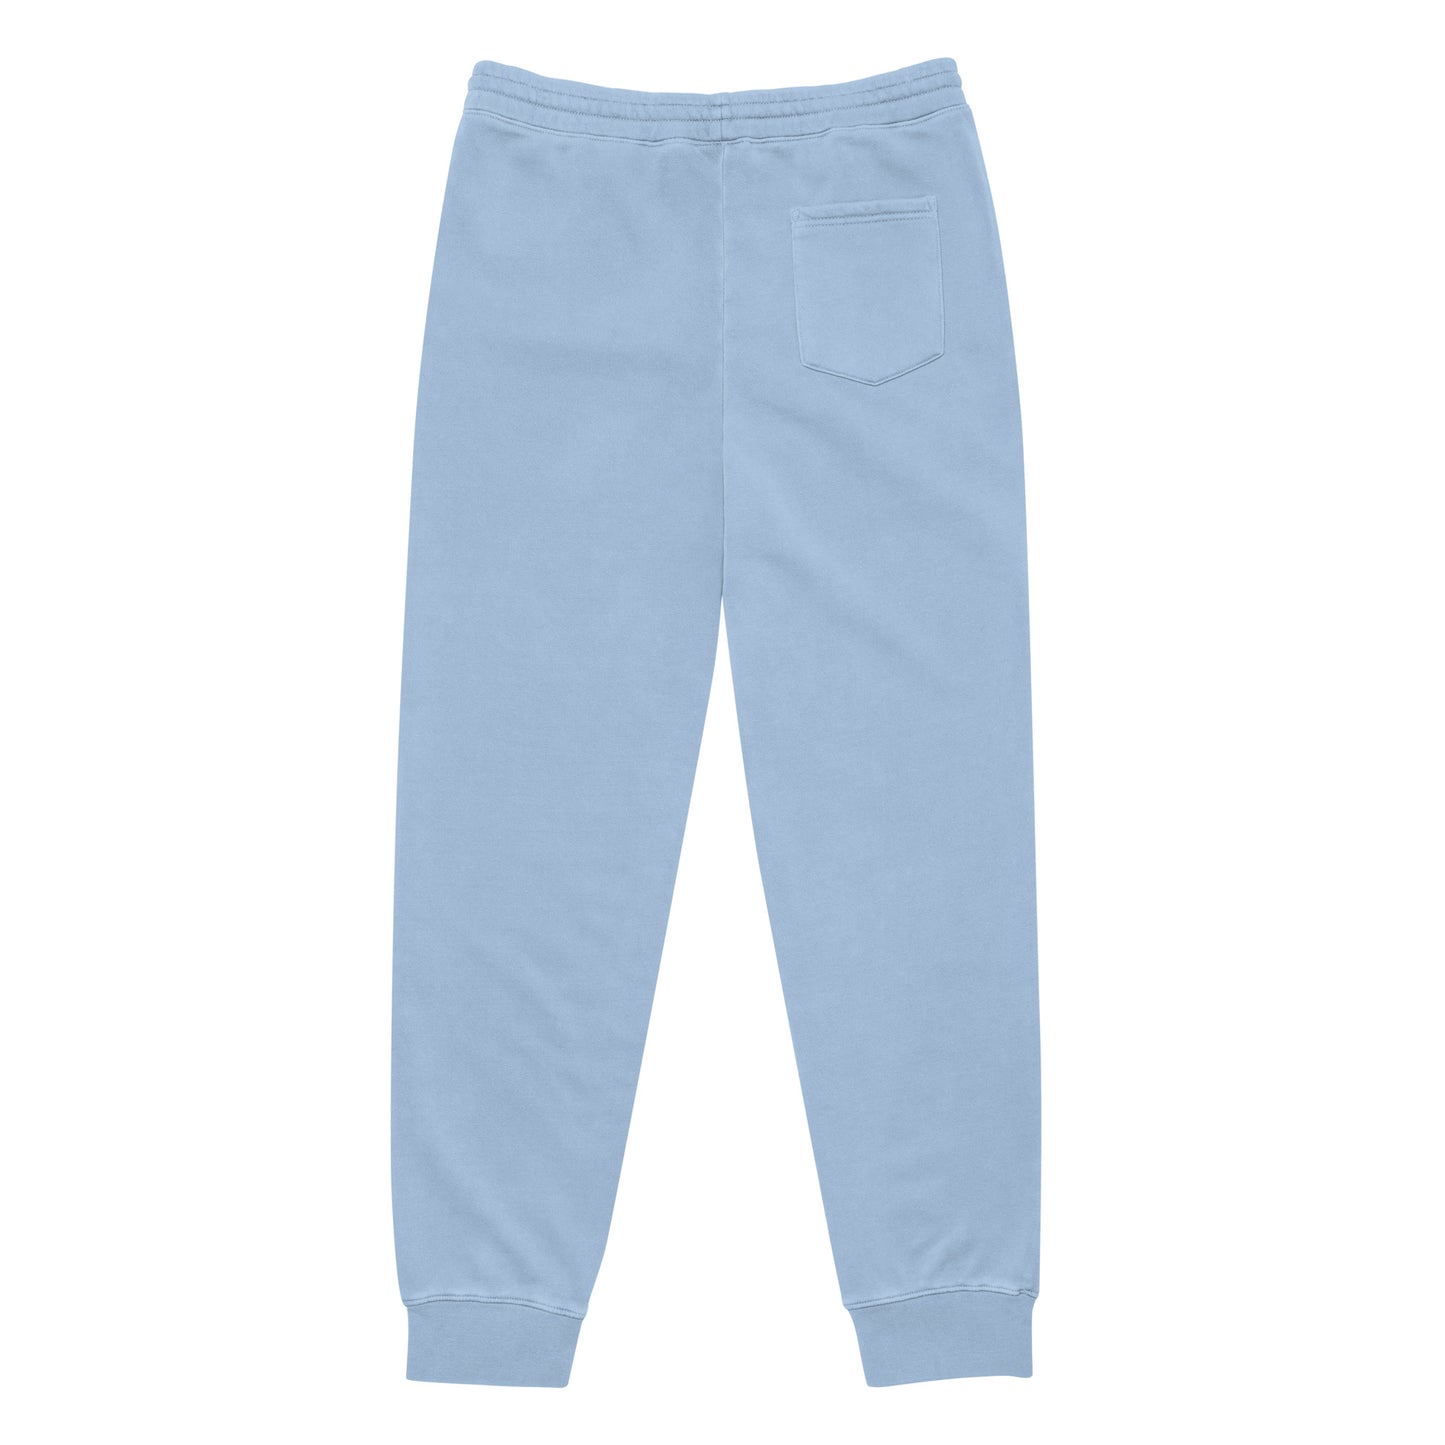 Unisex pigment-dyed sweatpants - The Coastal Vibe